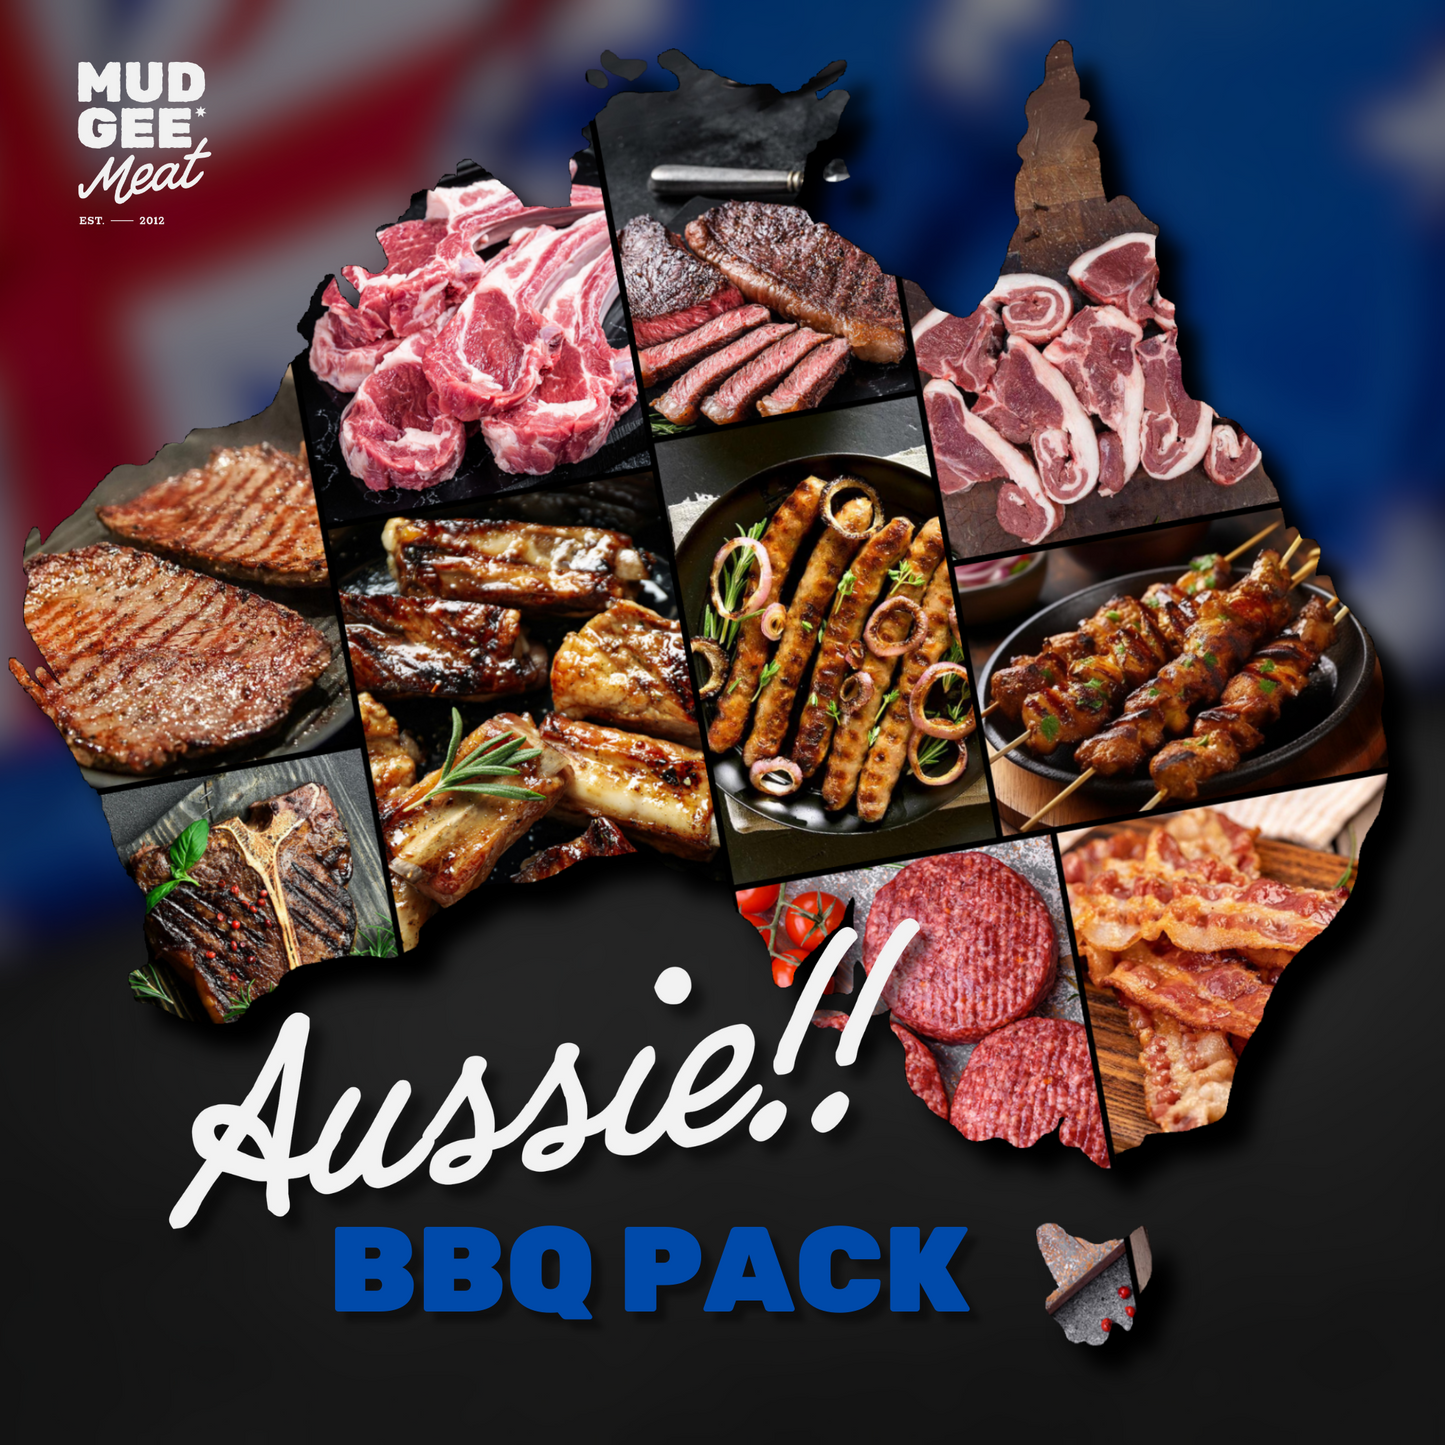 Great Aussie BBQ Pack